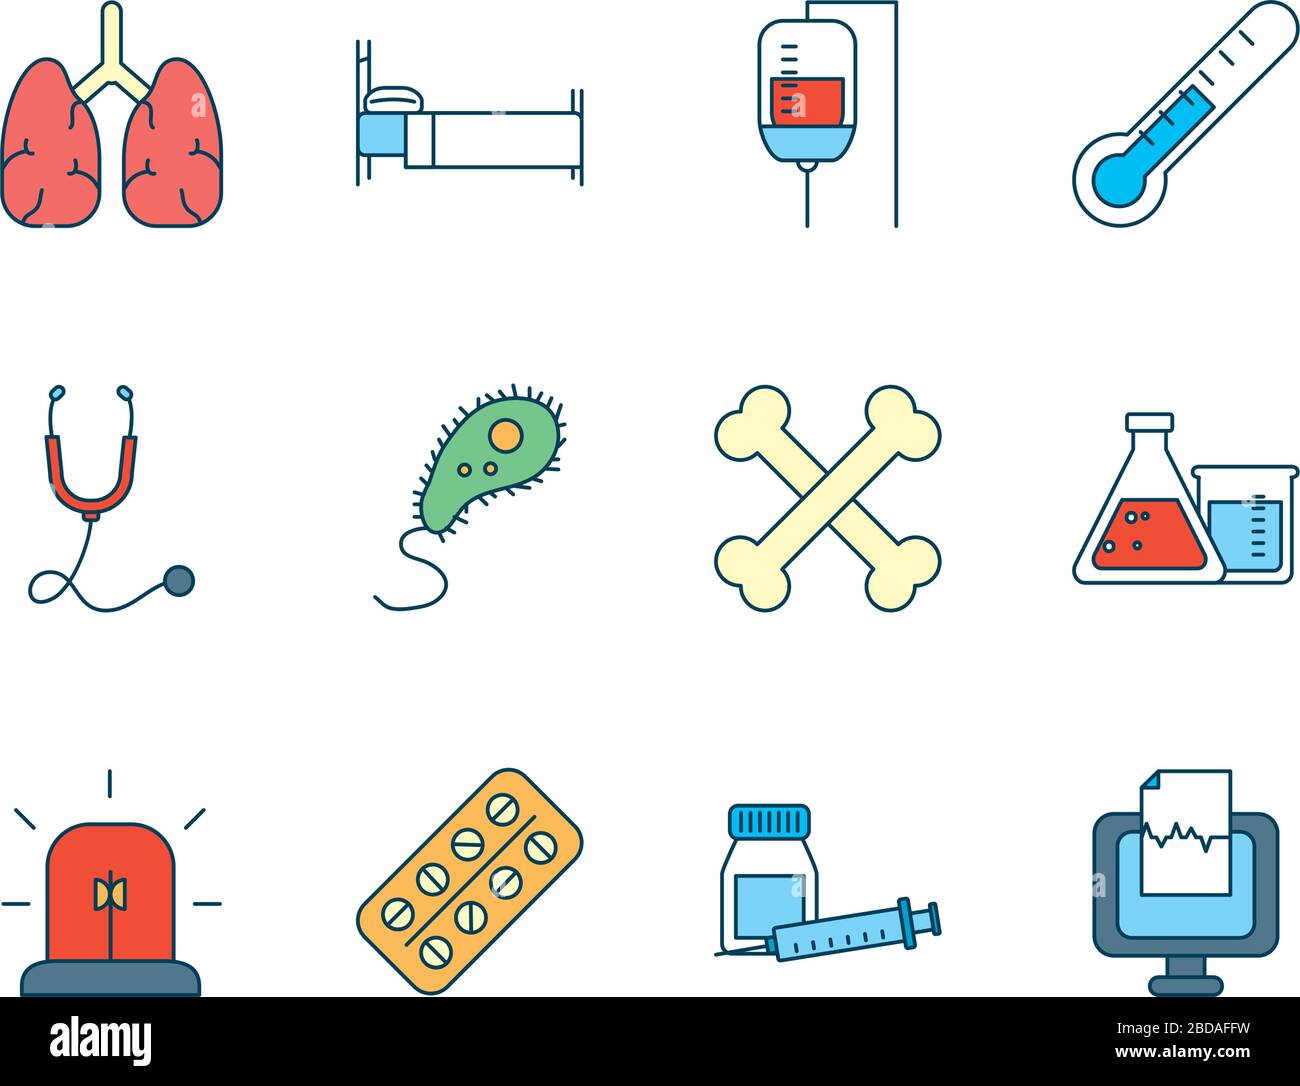 Menschliche Organe mit einem Symbol für medizinische, wissenschaftliche und Untersuchungssymbole, das auf weißen Hintergrund, Linien- und Füllstil, Vektorgrafiken gesetzt ist Stock Vektor